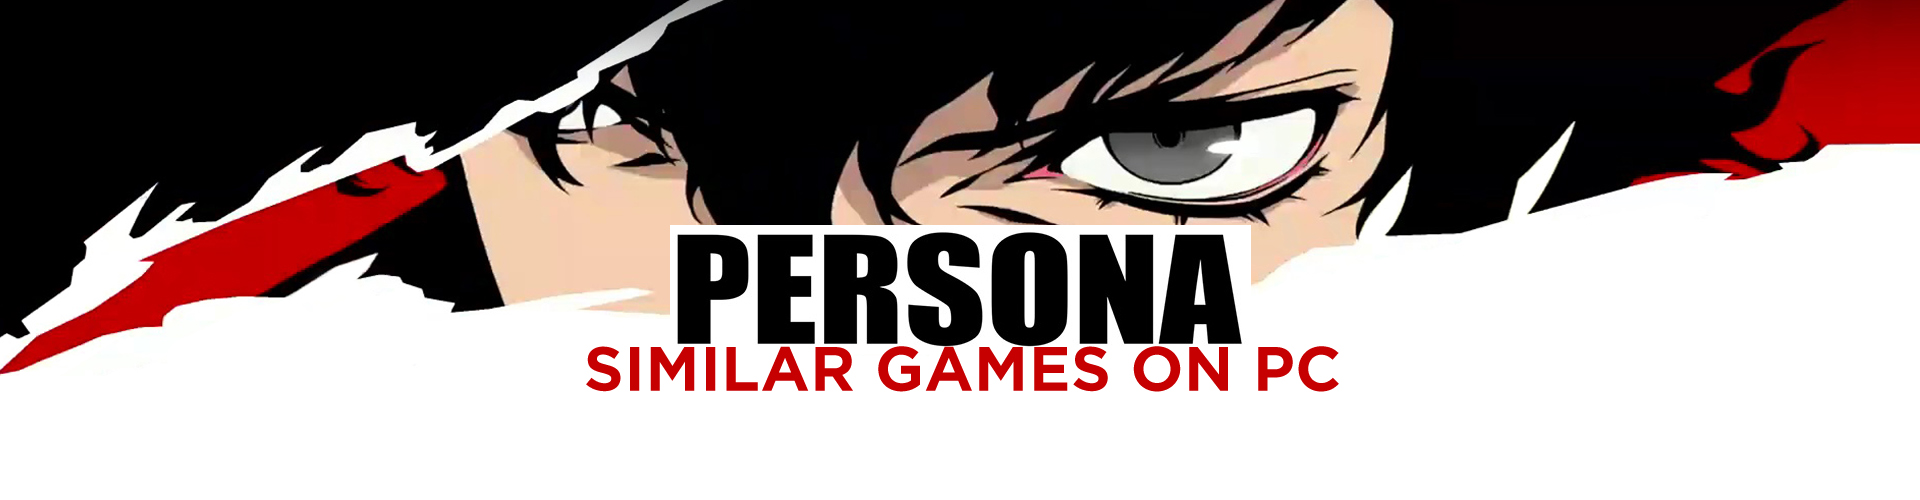 Los 15 mejores juegos de PC similares a Persona